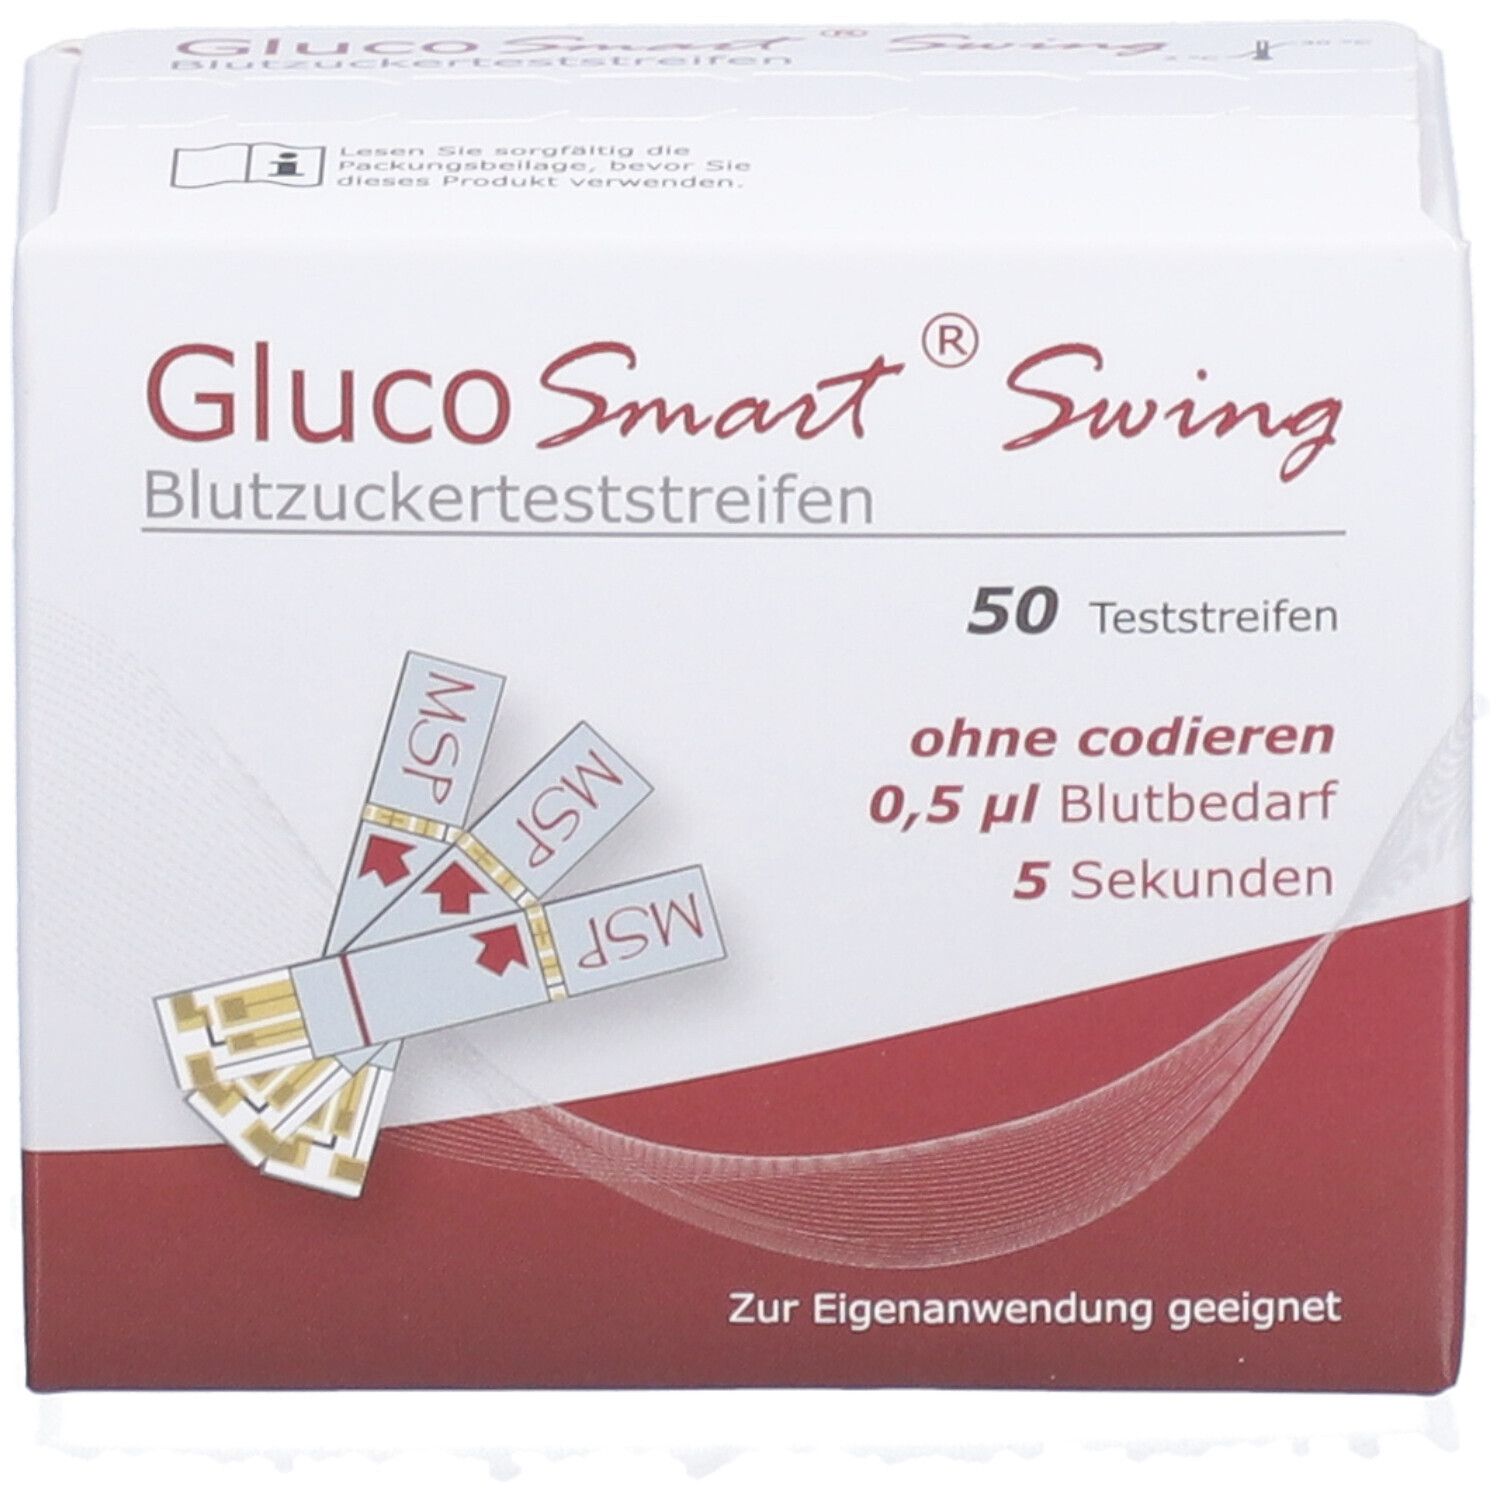 GLUCOSMART® Swing Blutzuckerteststreifen